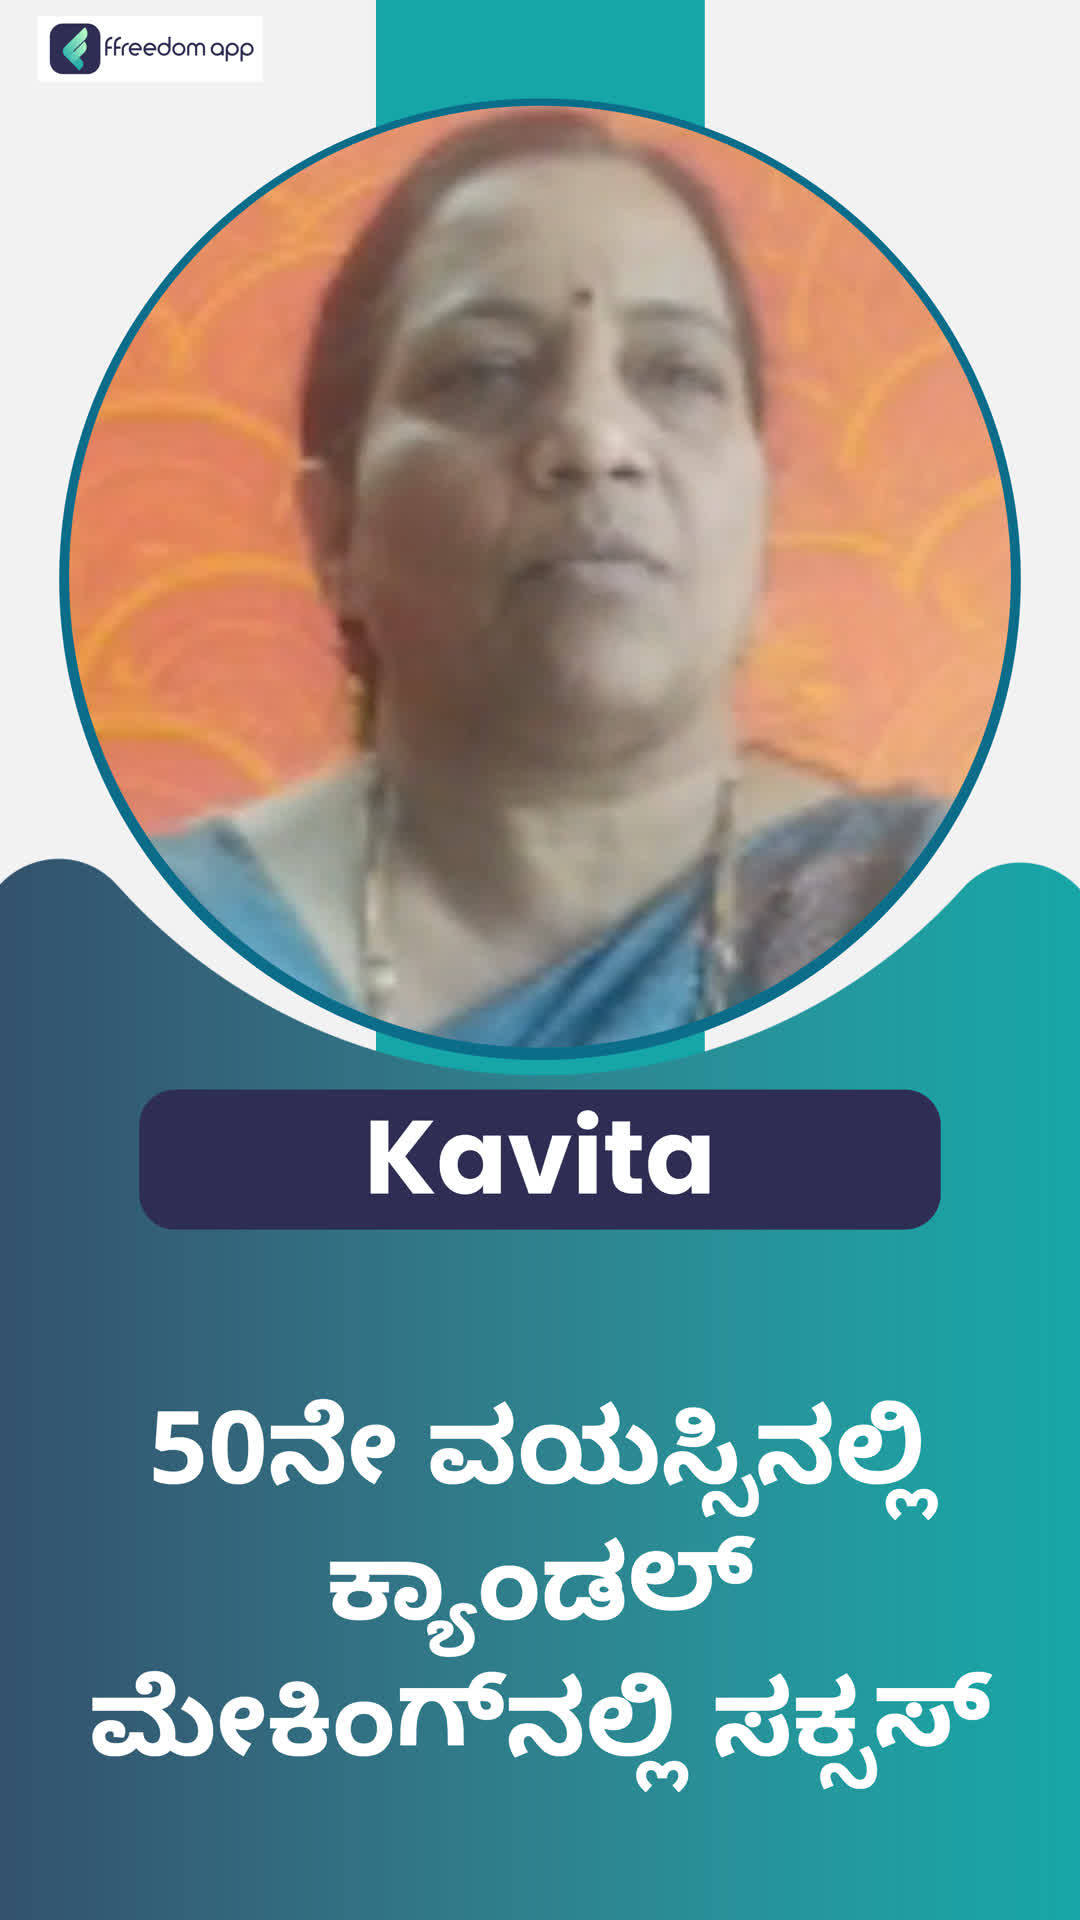 Kavita's Honest Review of ffreedom app - Bengaluru City ,Karnataka